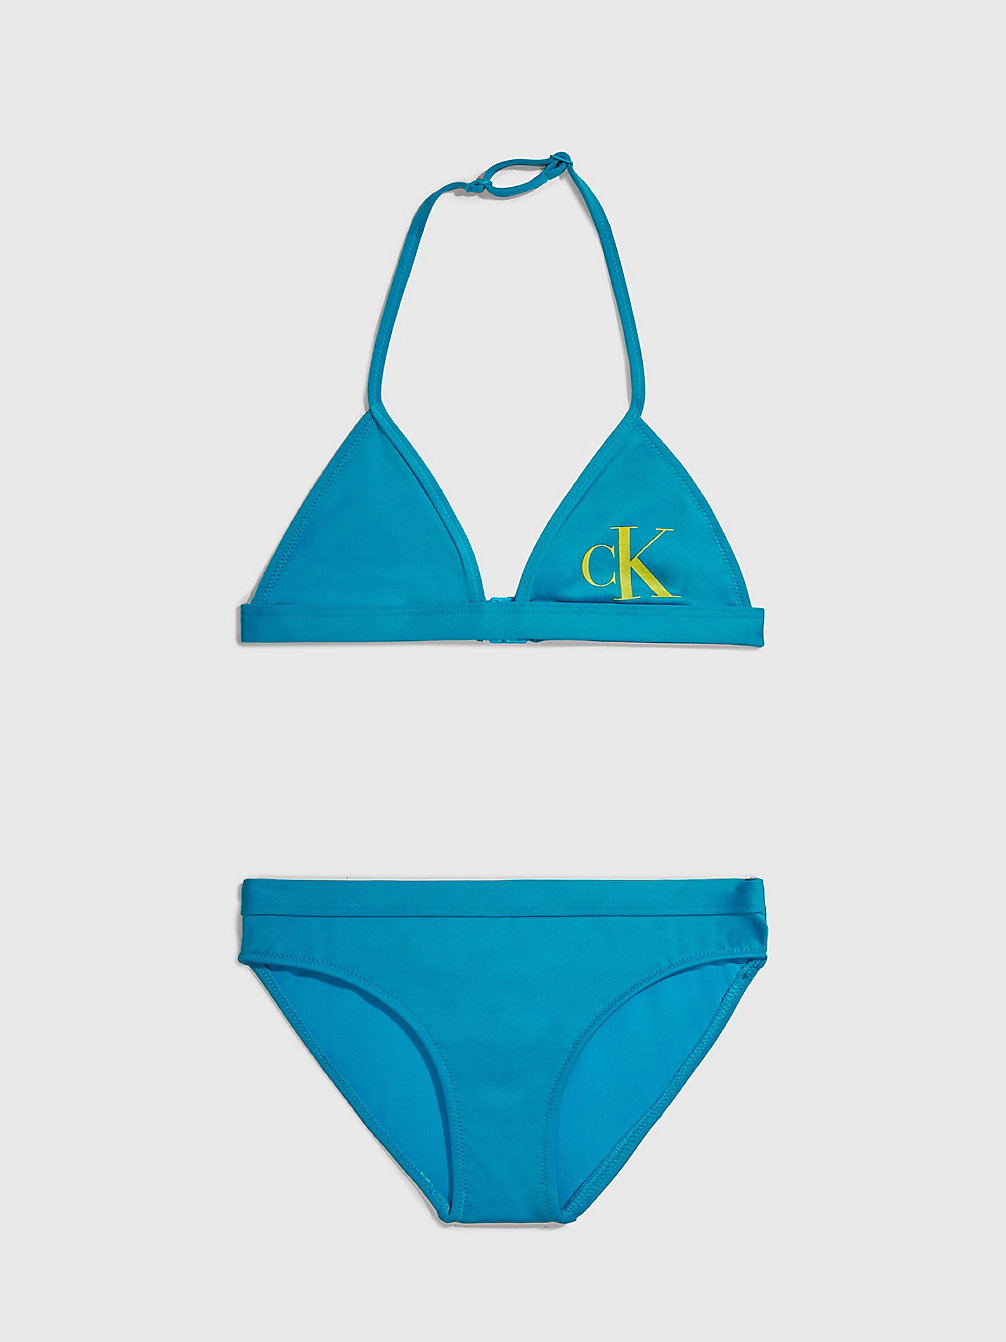 CLEAR TURQUOISE Bikini-Set Mit Triangel-Top Für Mädchen - CK Monogram undefined Maedchen Calvin Klein